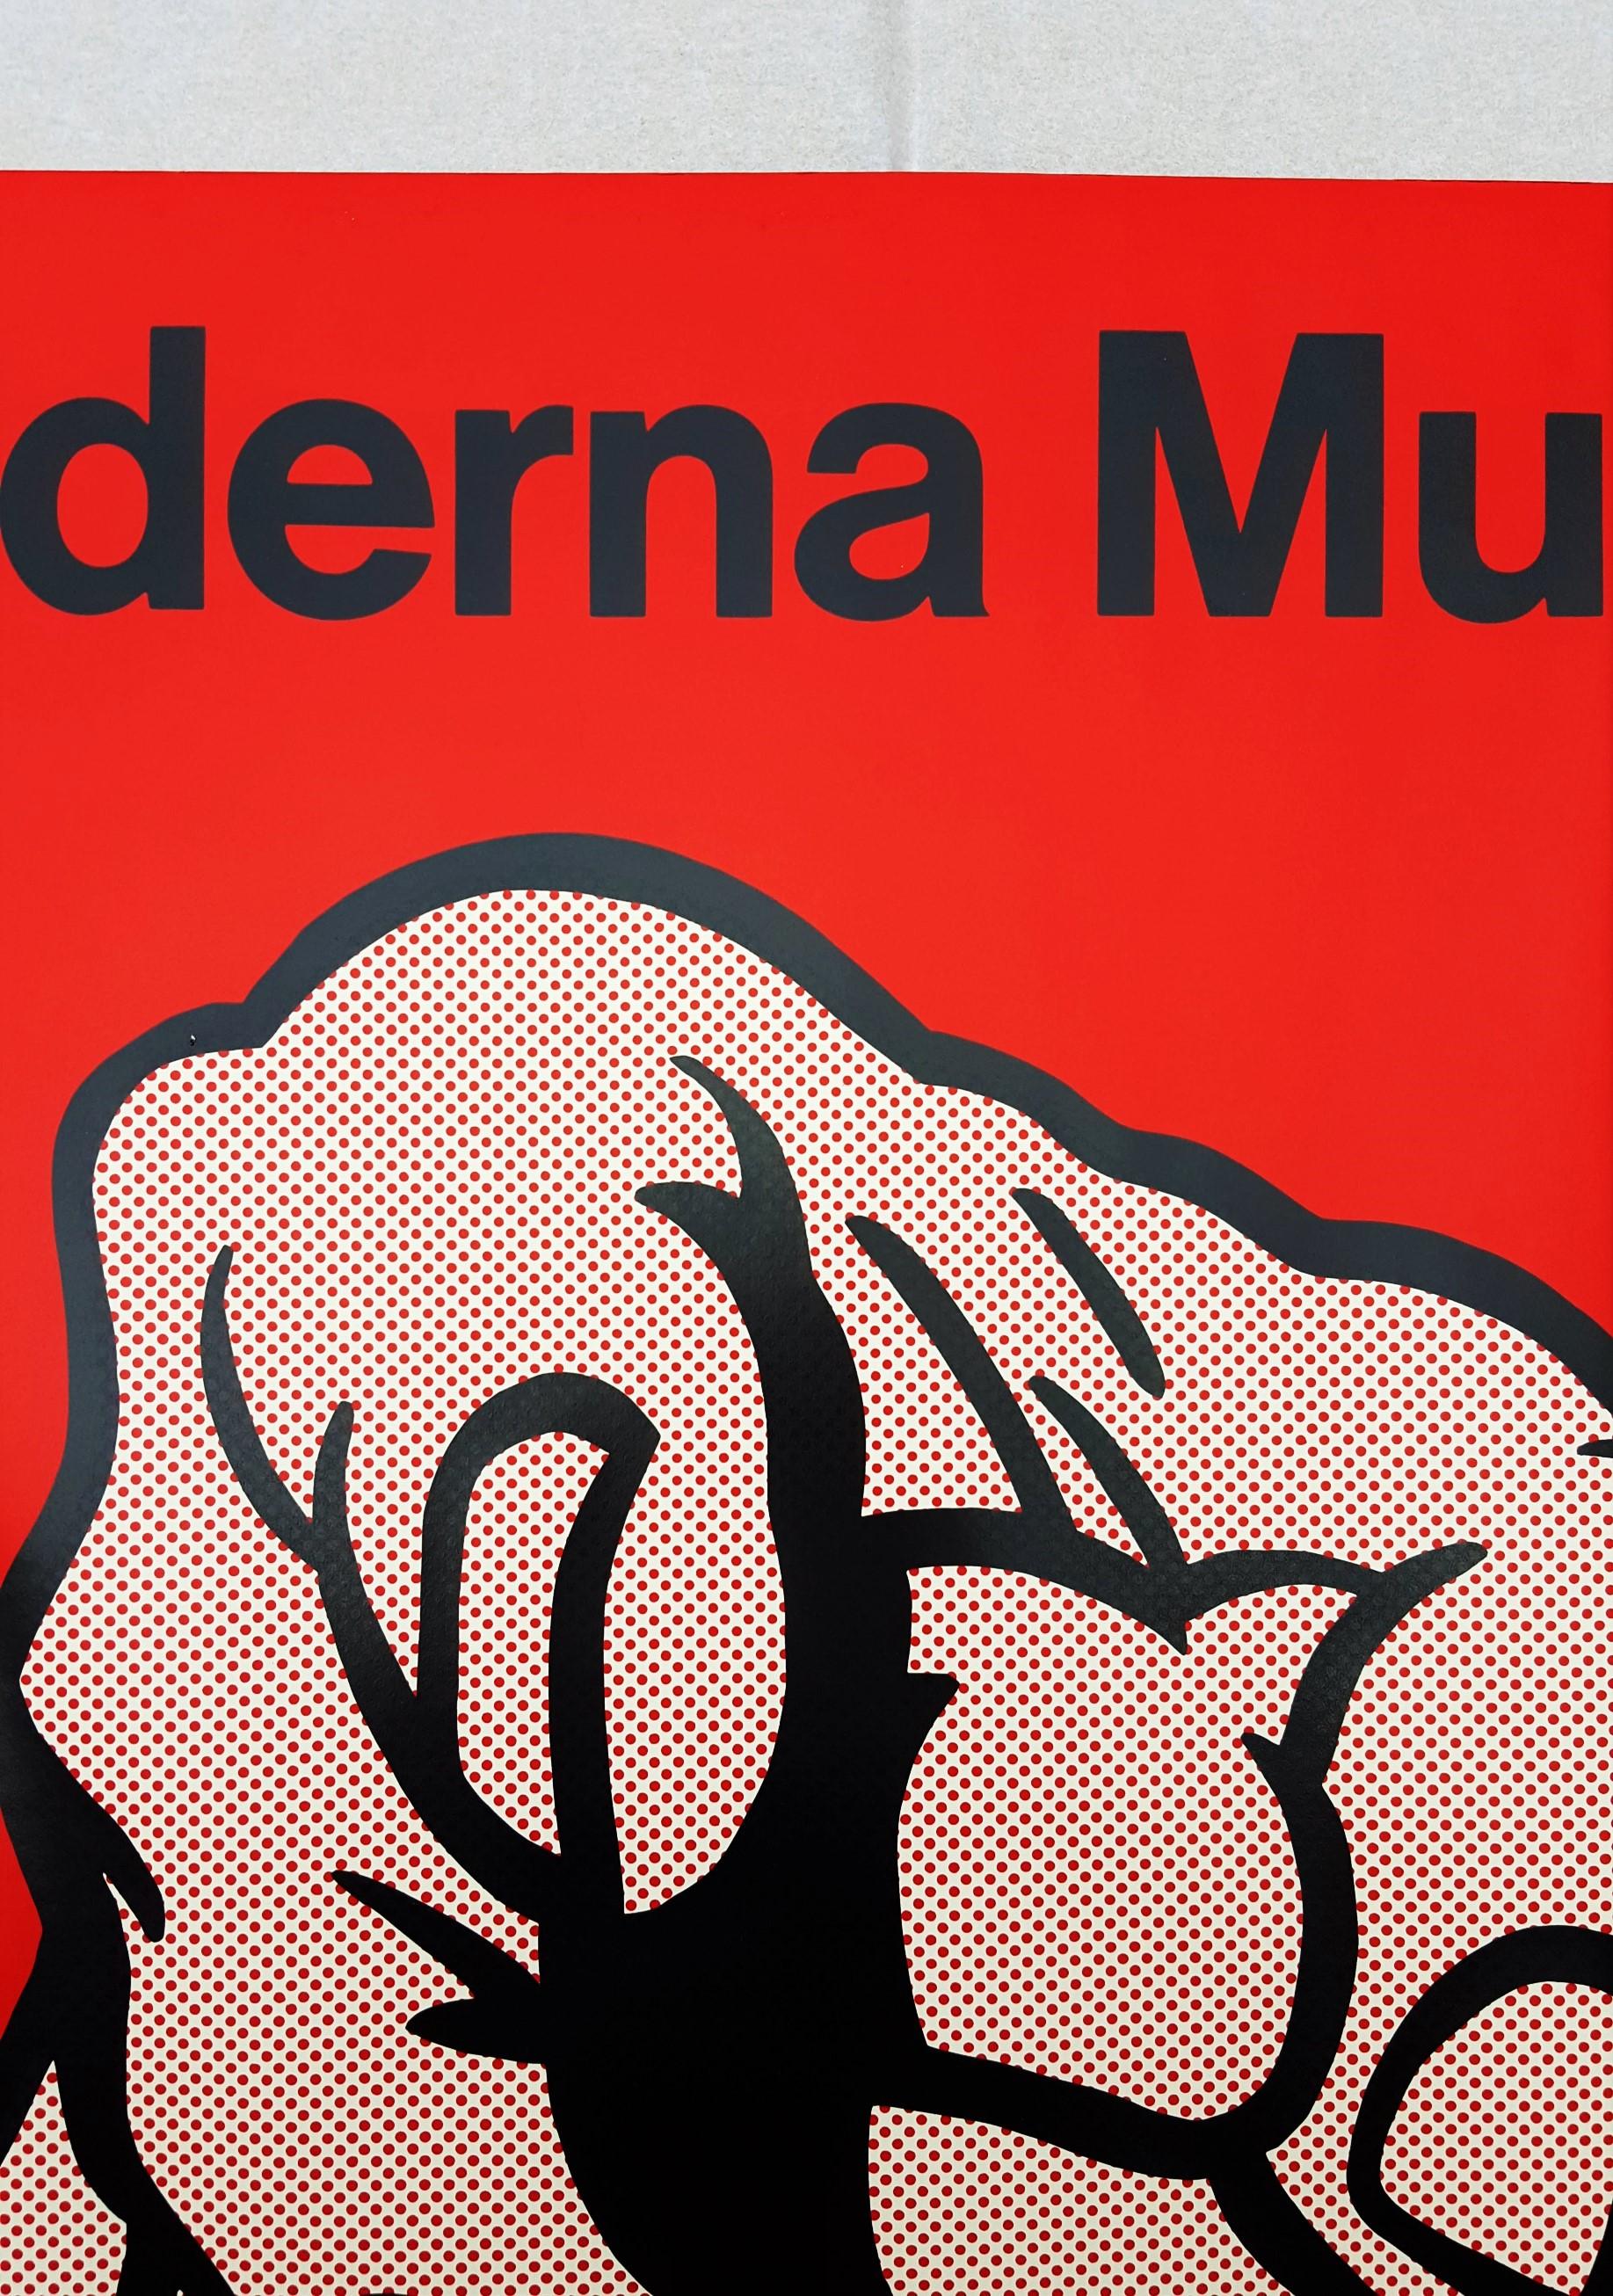 Moderna Museet im Louisiana (Finger Pointing) - Red Figurative Print by Roy Lichtenstein